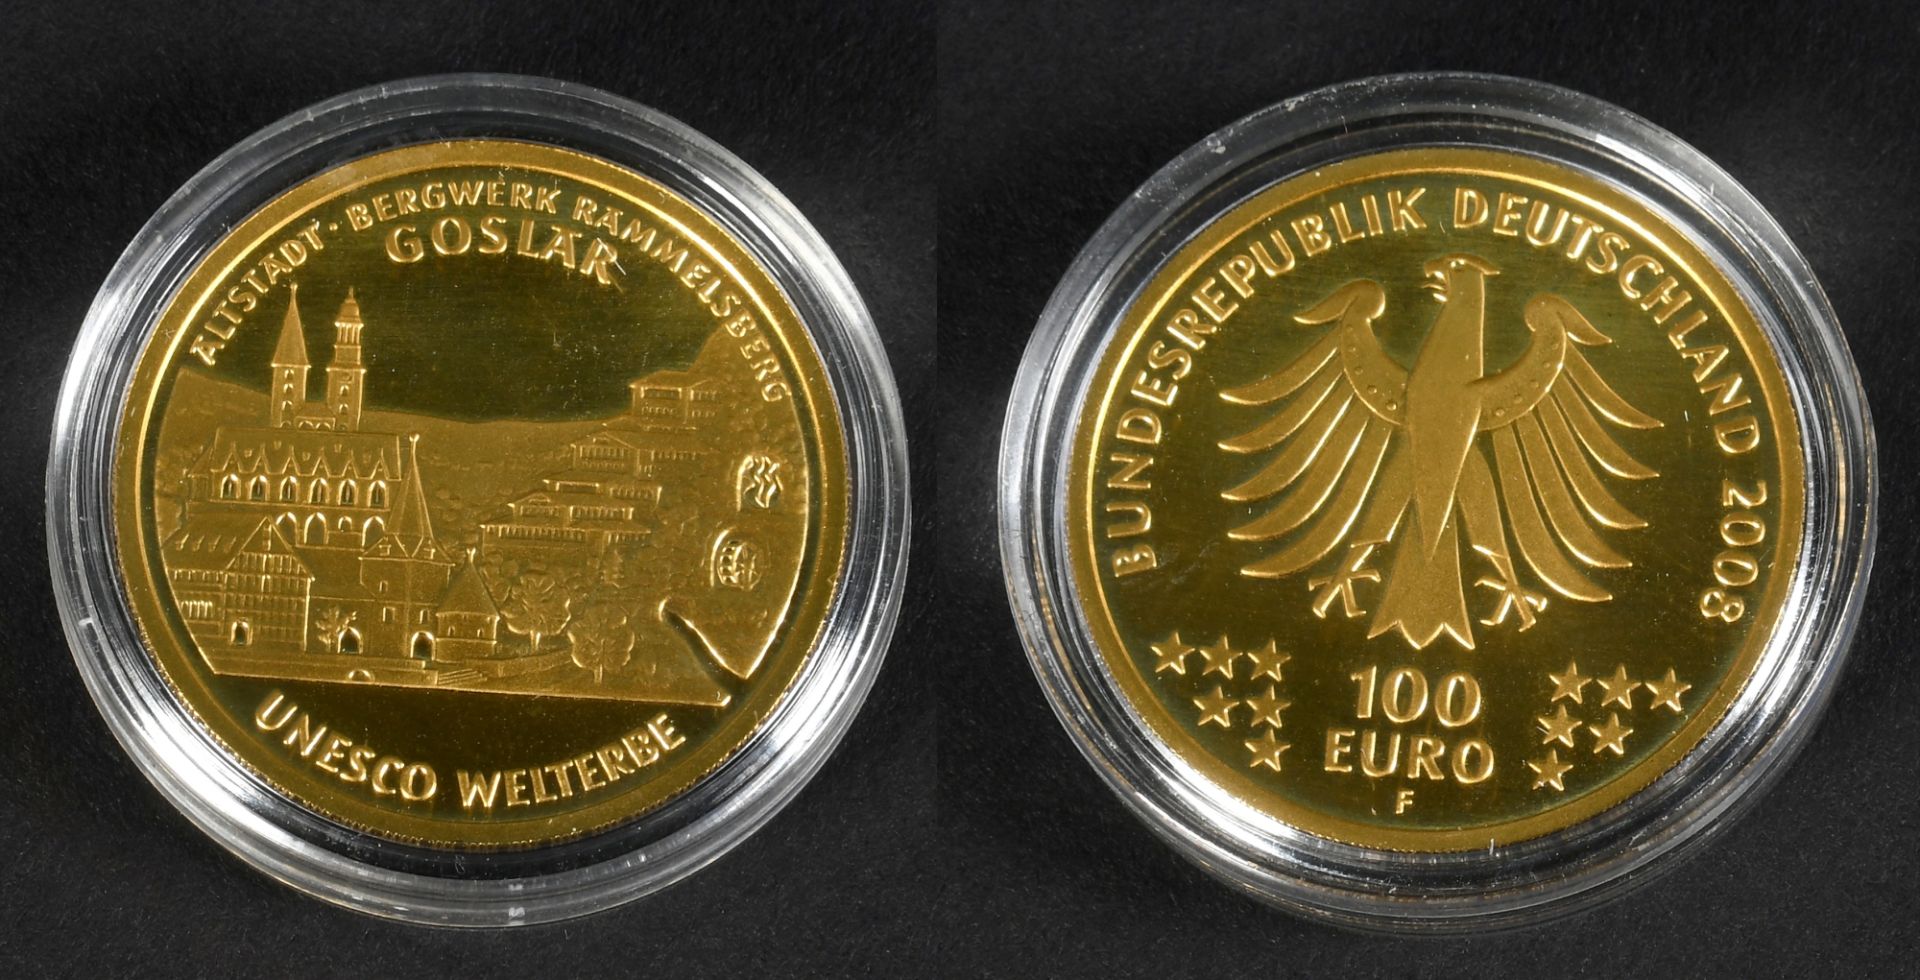 Münze - 100 Euro "Unesco Welterbe Goslar"